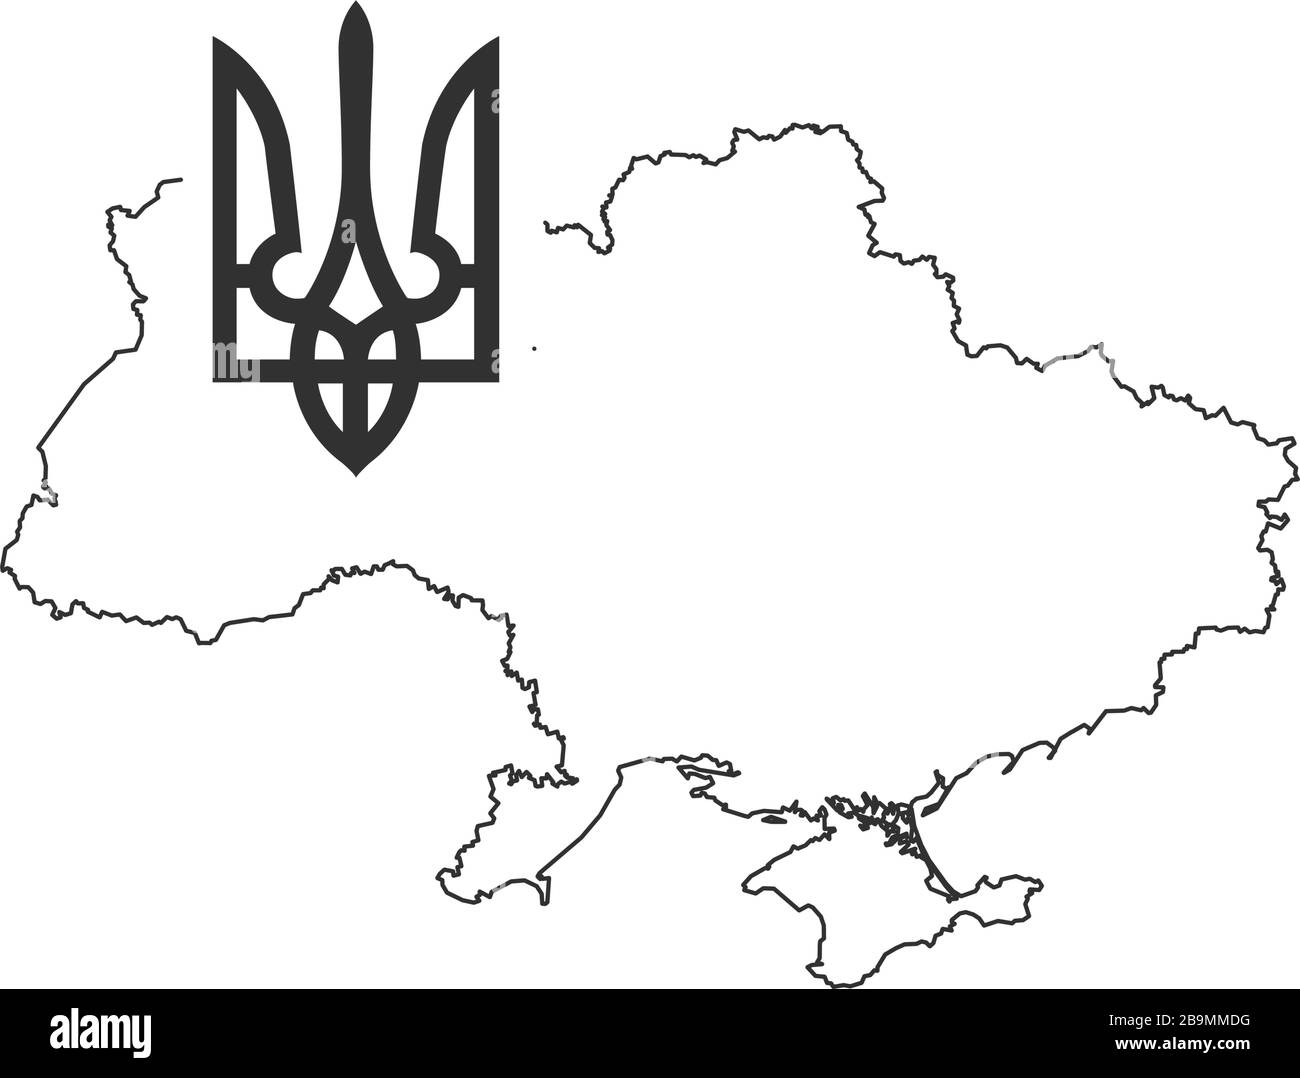 Lineare Karte der Ukraine mit Tryzub. Ukrainisches Wappen, Dreizack-Nationalsymbol. Darstellung des Stock-Vektors auf weißem Hintergrund isoliert Stock Vektor